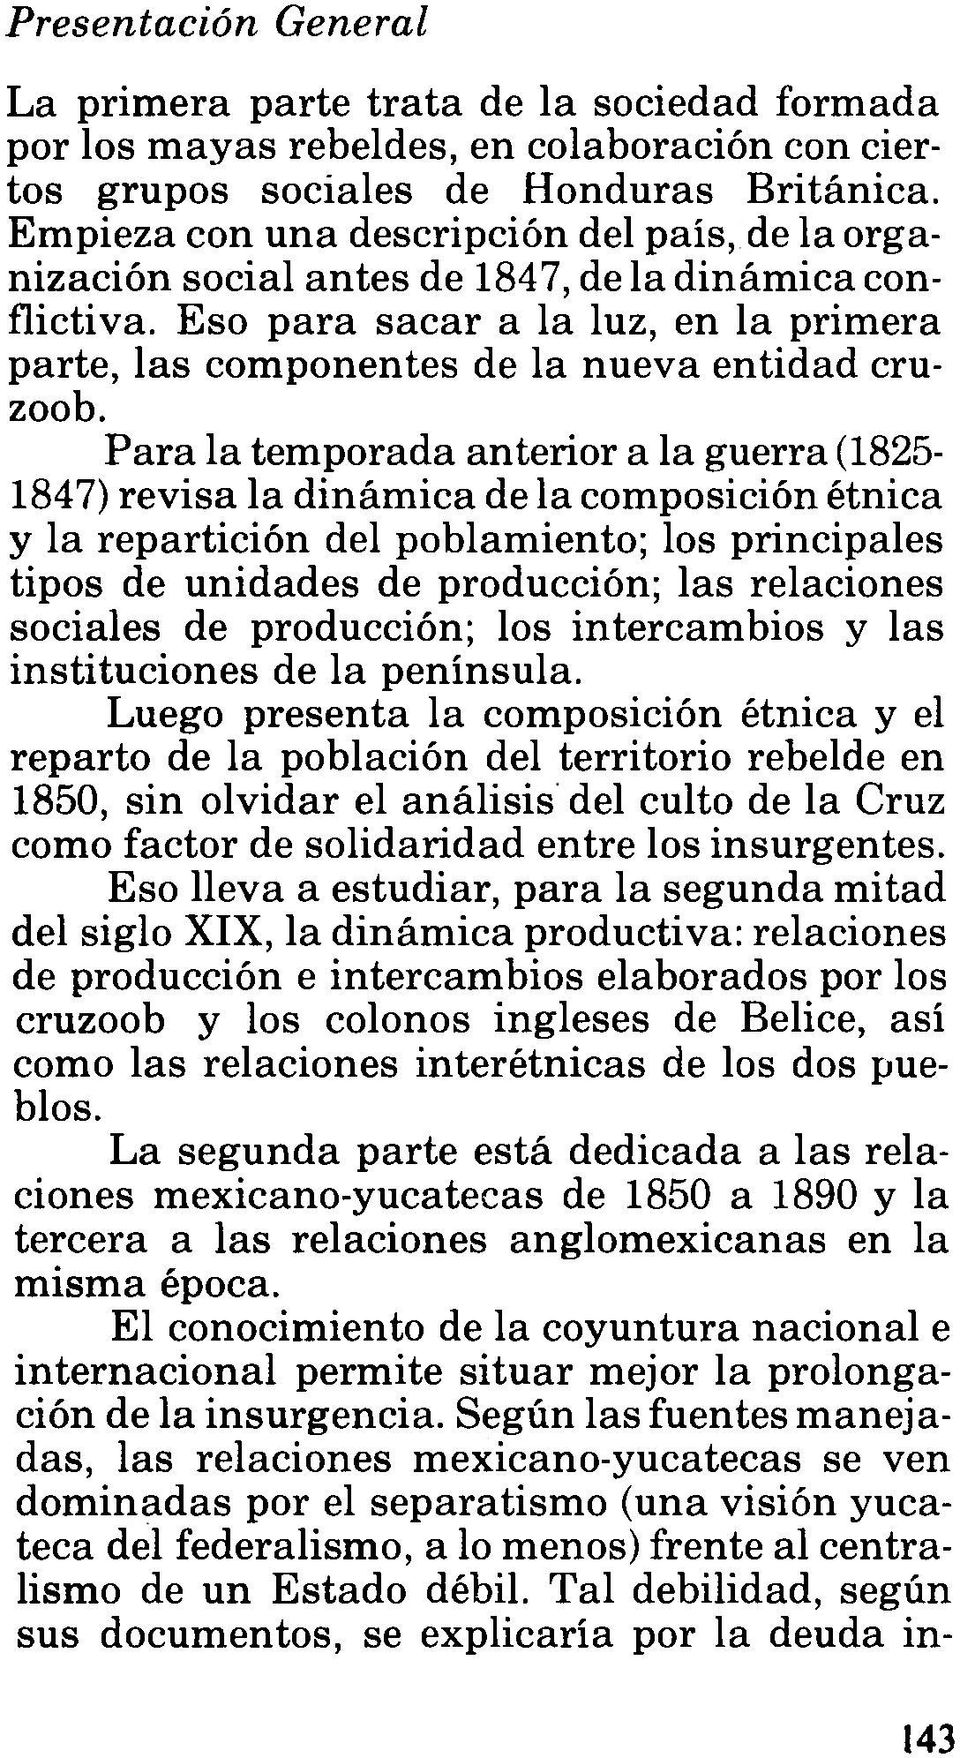 Para la temporada anterior a la guerra (1825-1847) revisa la dinámica de la composición étnica y la repartición del poblamiento; los principales tipos de unidades de producción; las relaciones